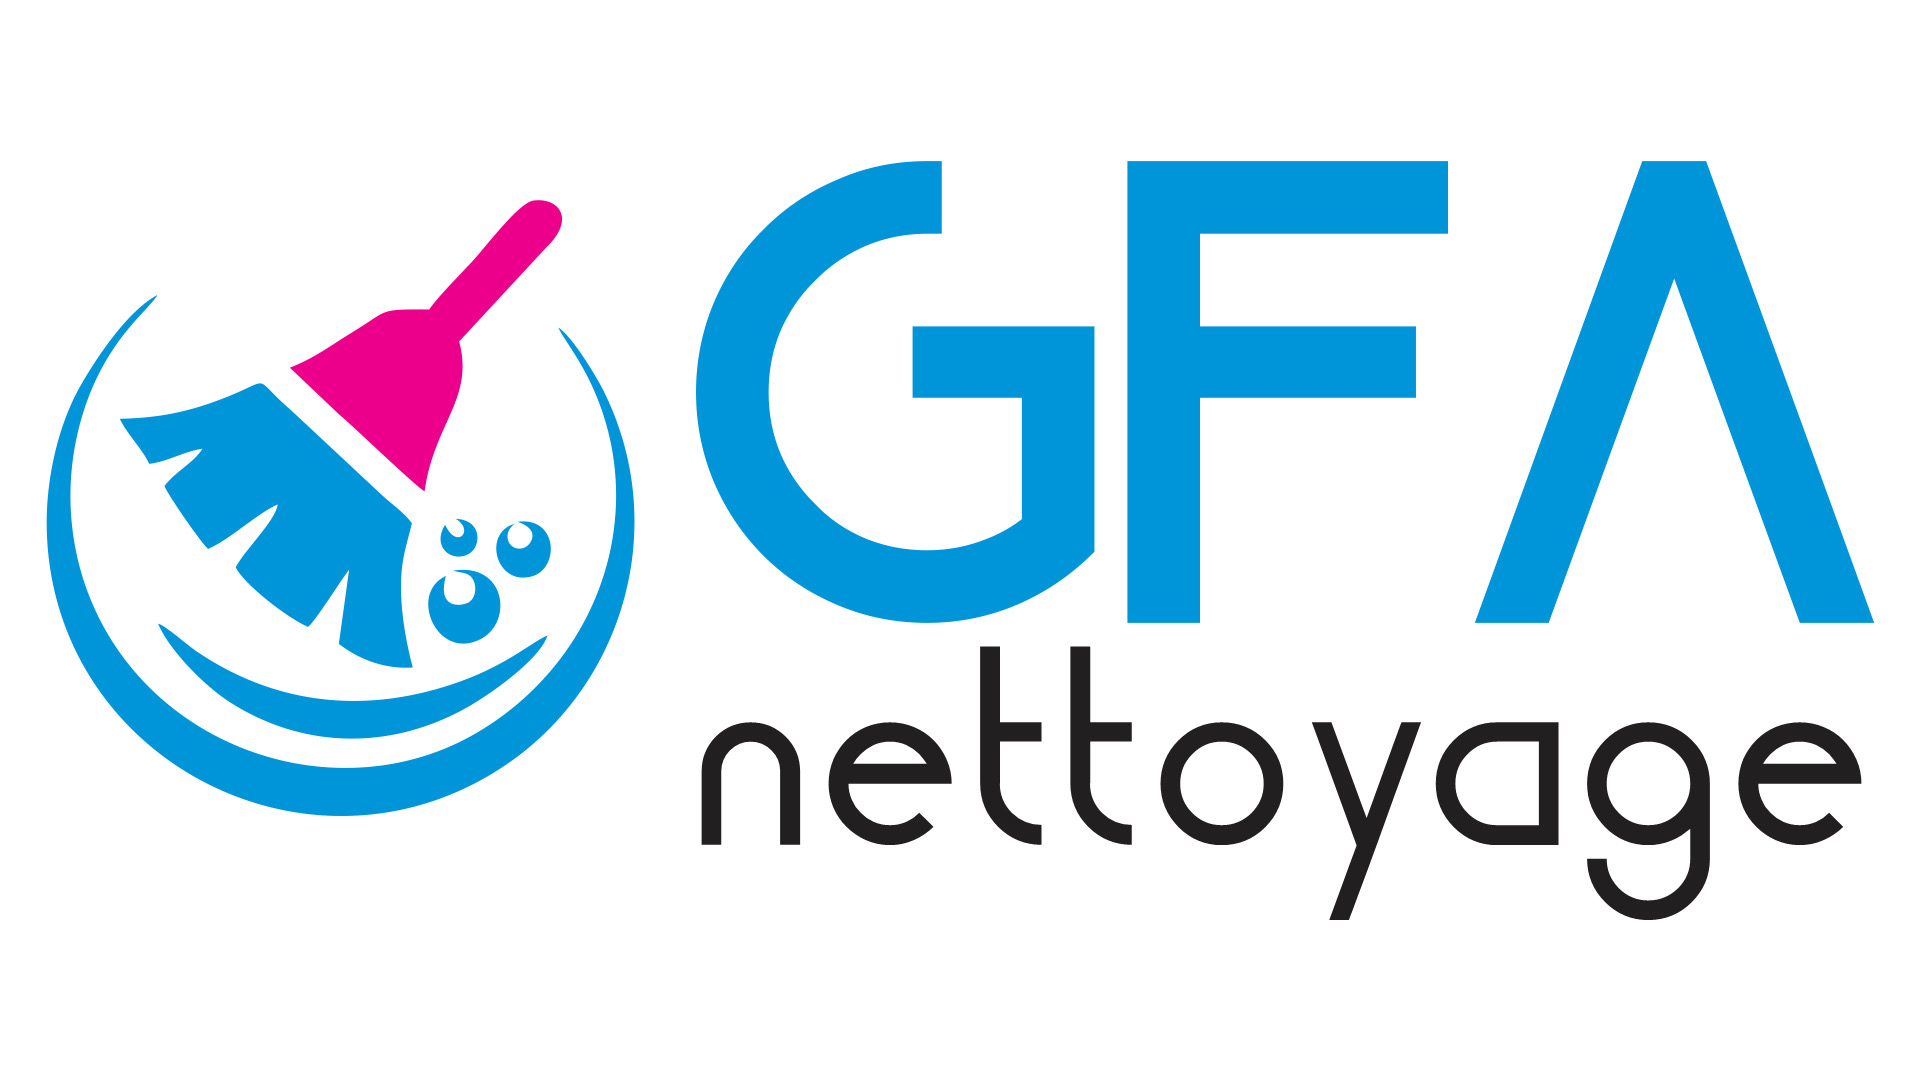 Logo de Gfa nettoyage, société de travaux en Service à la personne